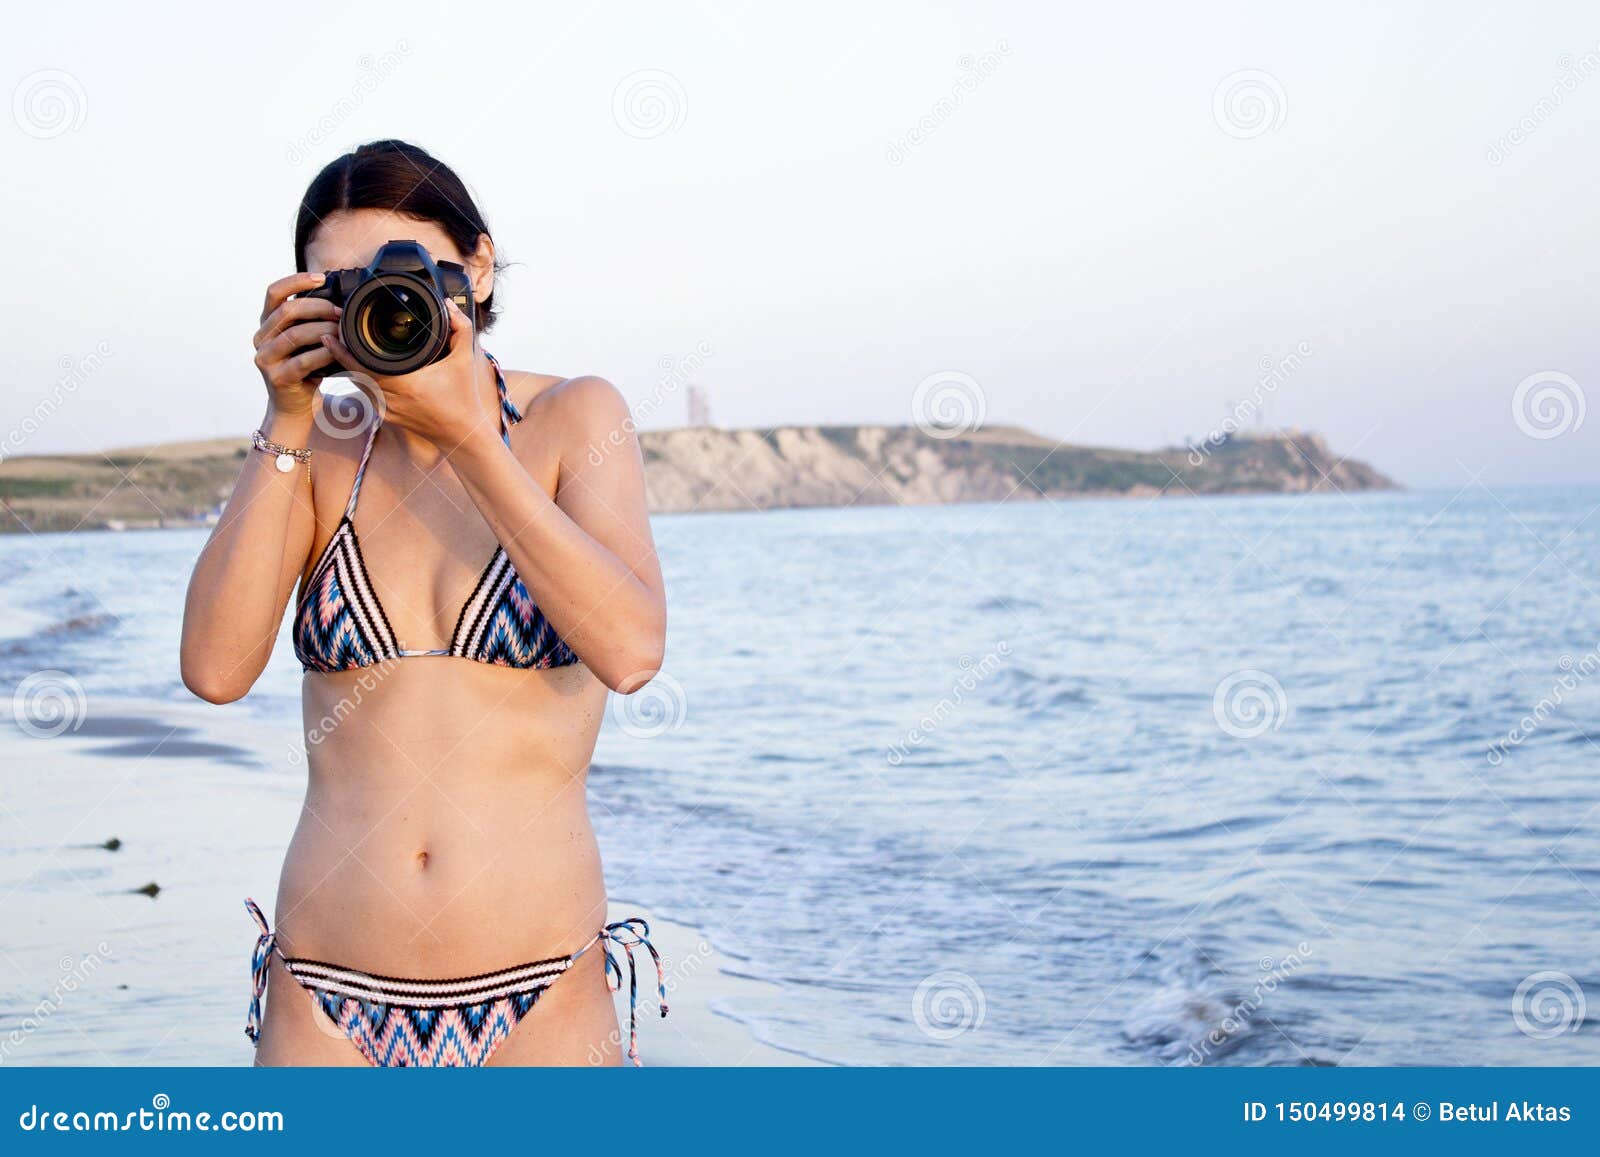 Beautiful Woman Photographer Takes Photos In Bikini On The Beach Stock